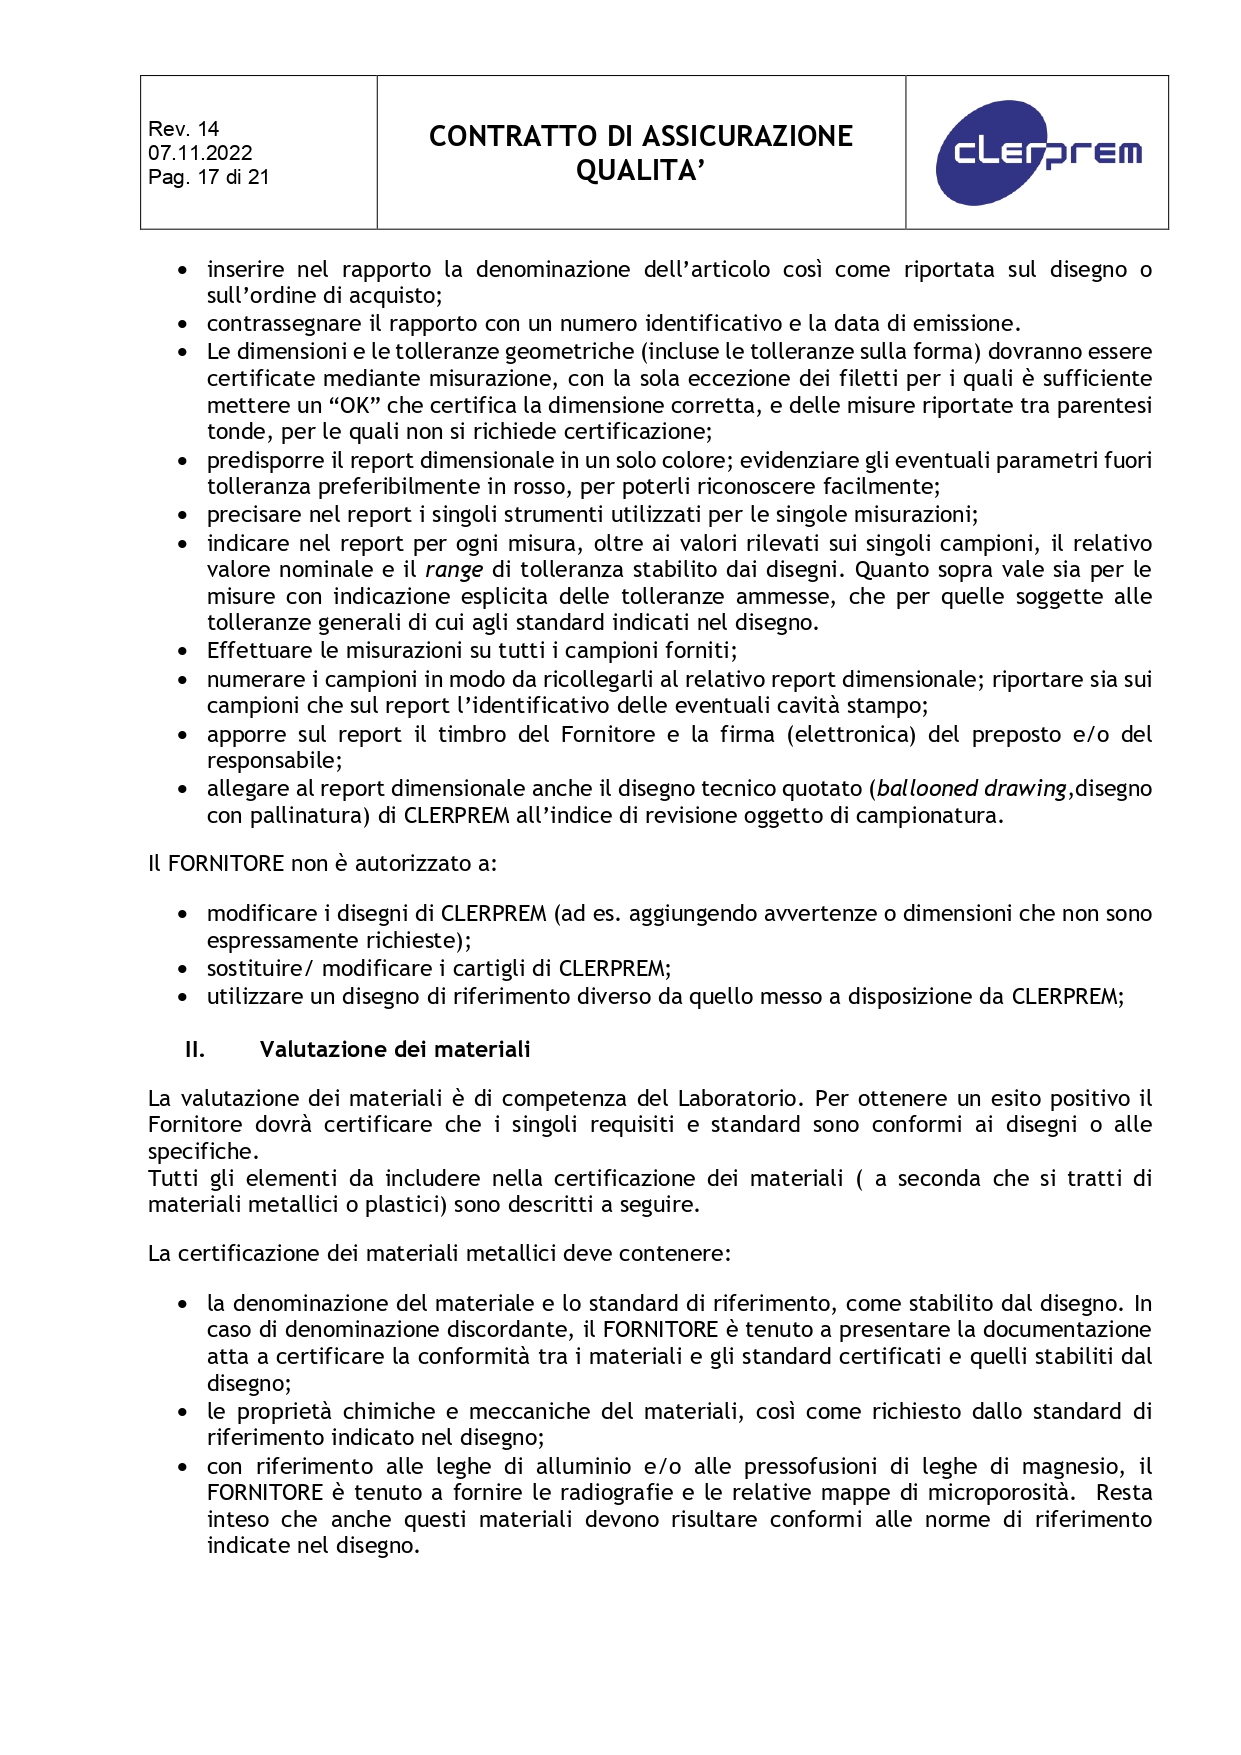 Accordo di Assicurazione Qualità rev. 14_page-0017